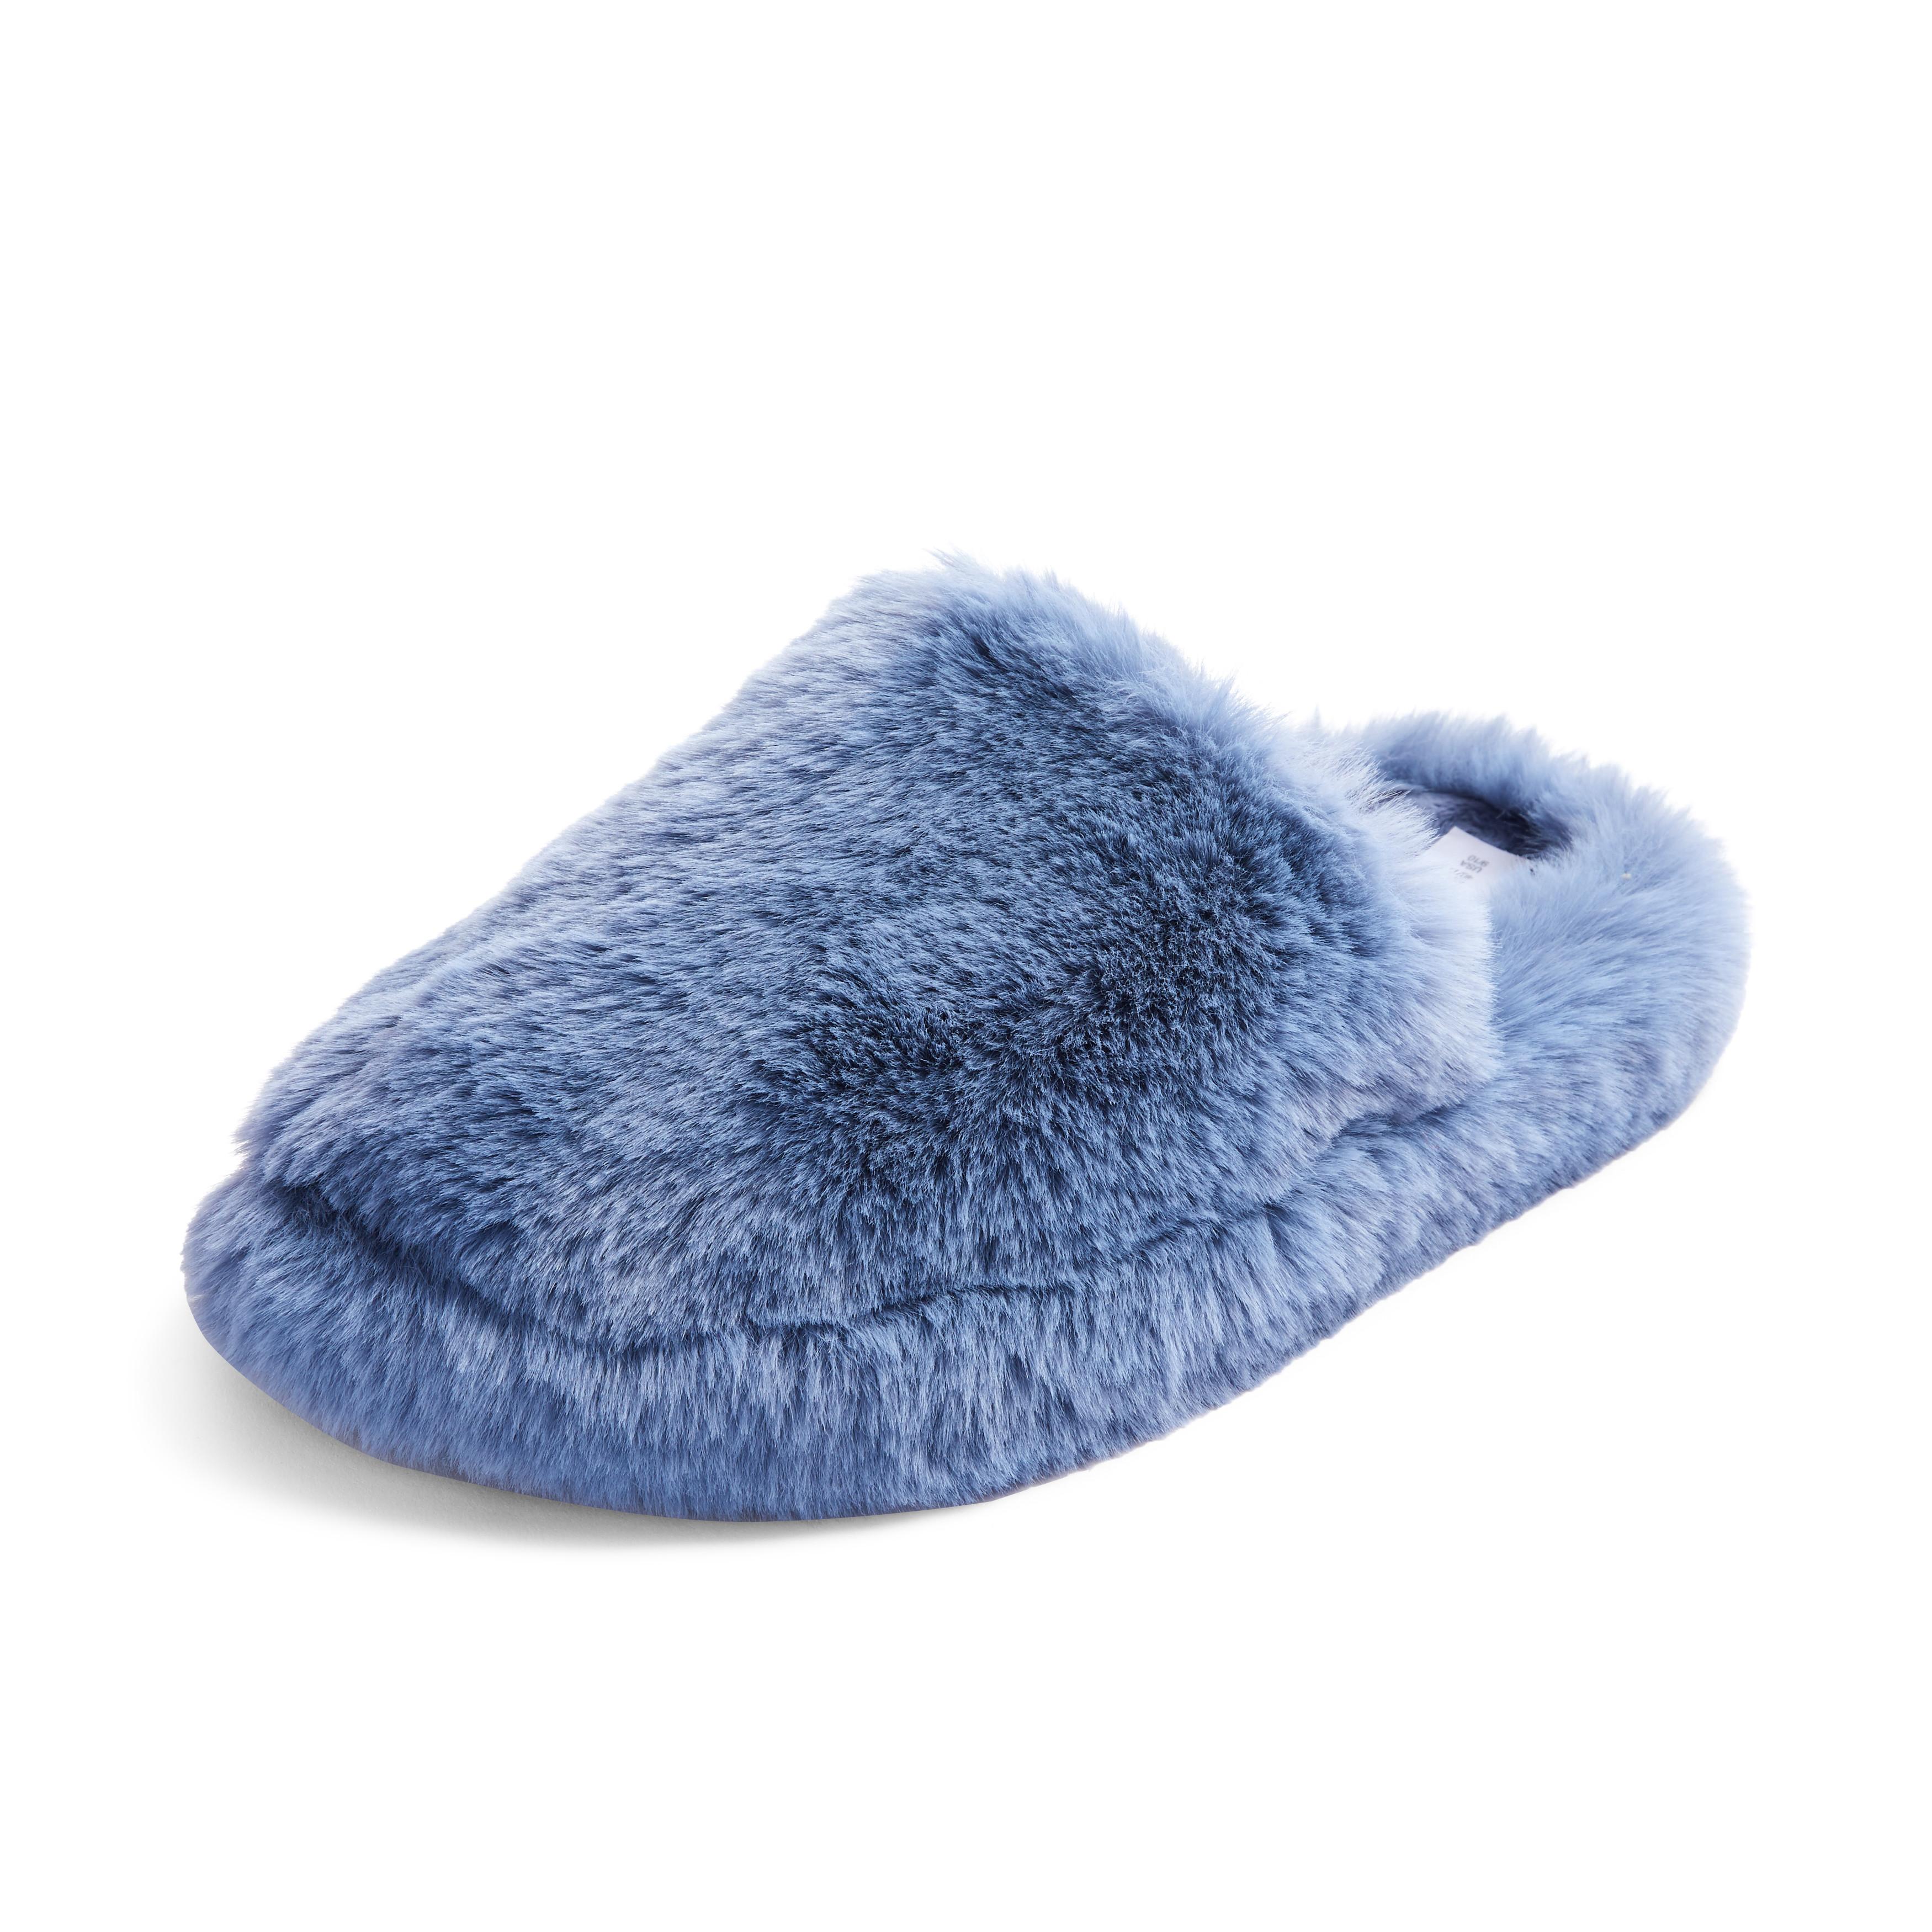 Blue Faux Fur Fluffy Mule Slippers | Women's Slippers | Women's Shoes ...